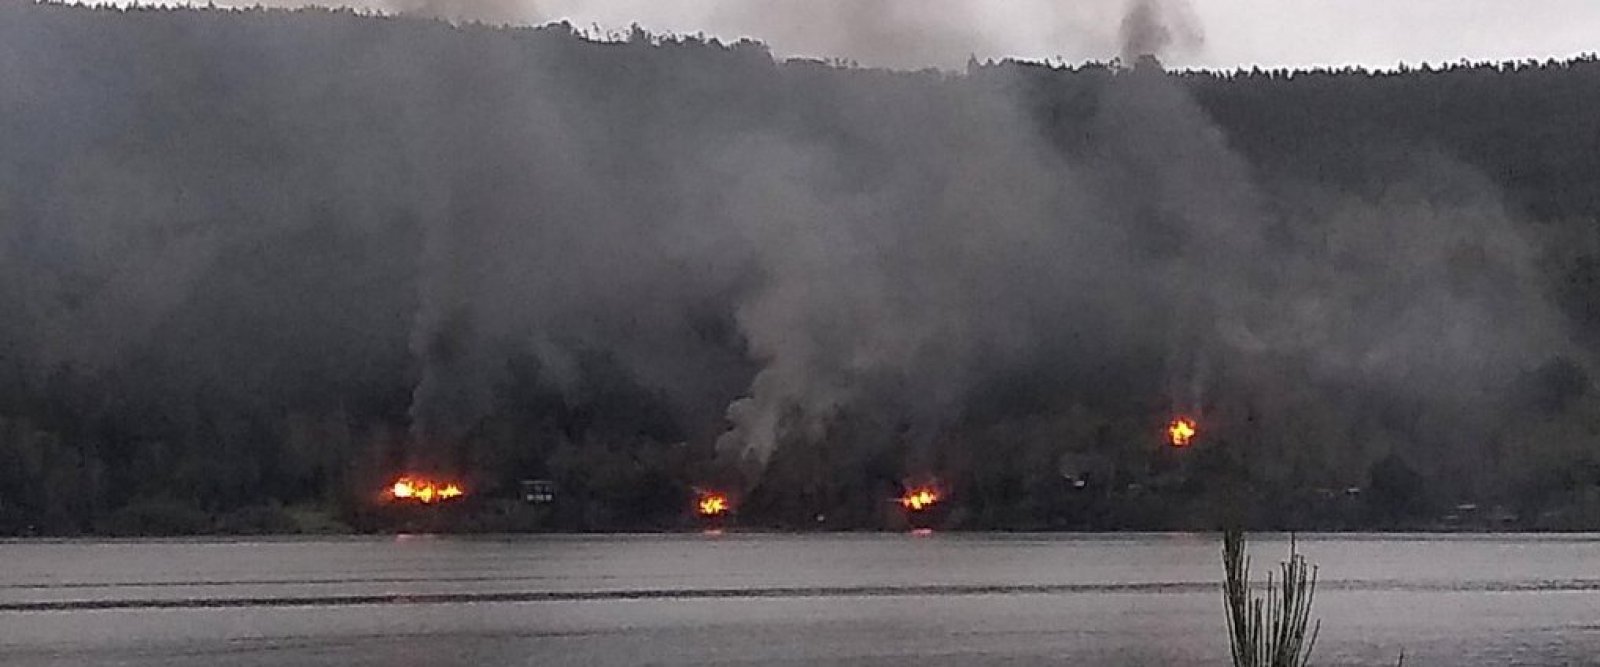 Cuatro inmuebles destruidos tras ataque incendiario en ribera de Lago Lanalhue